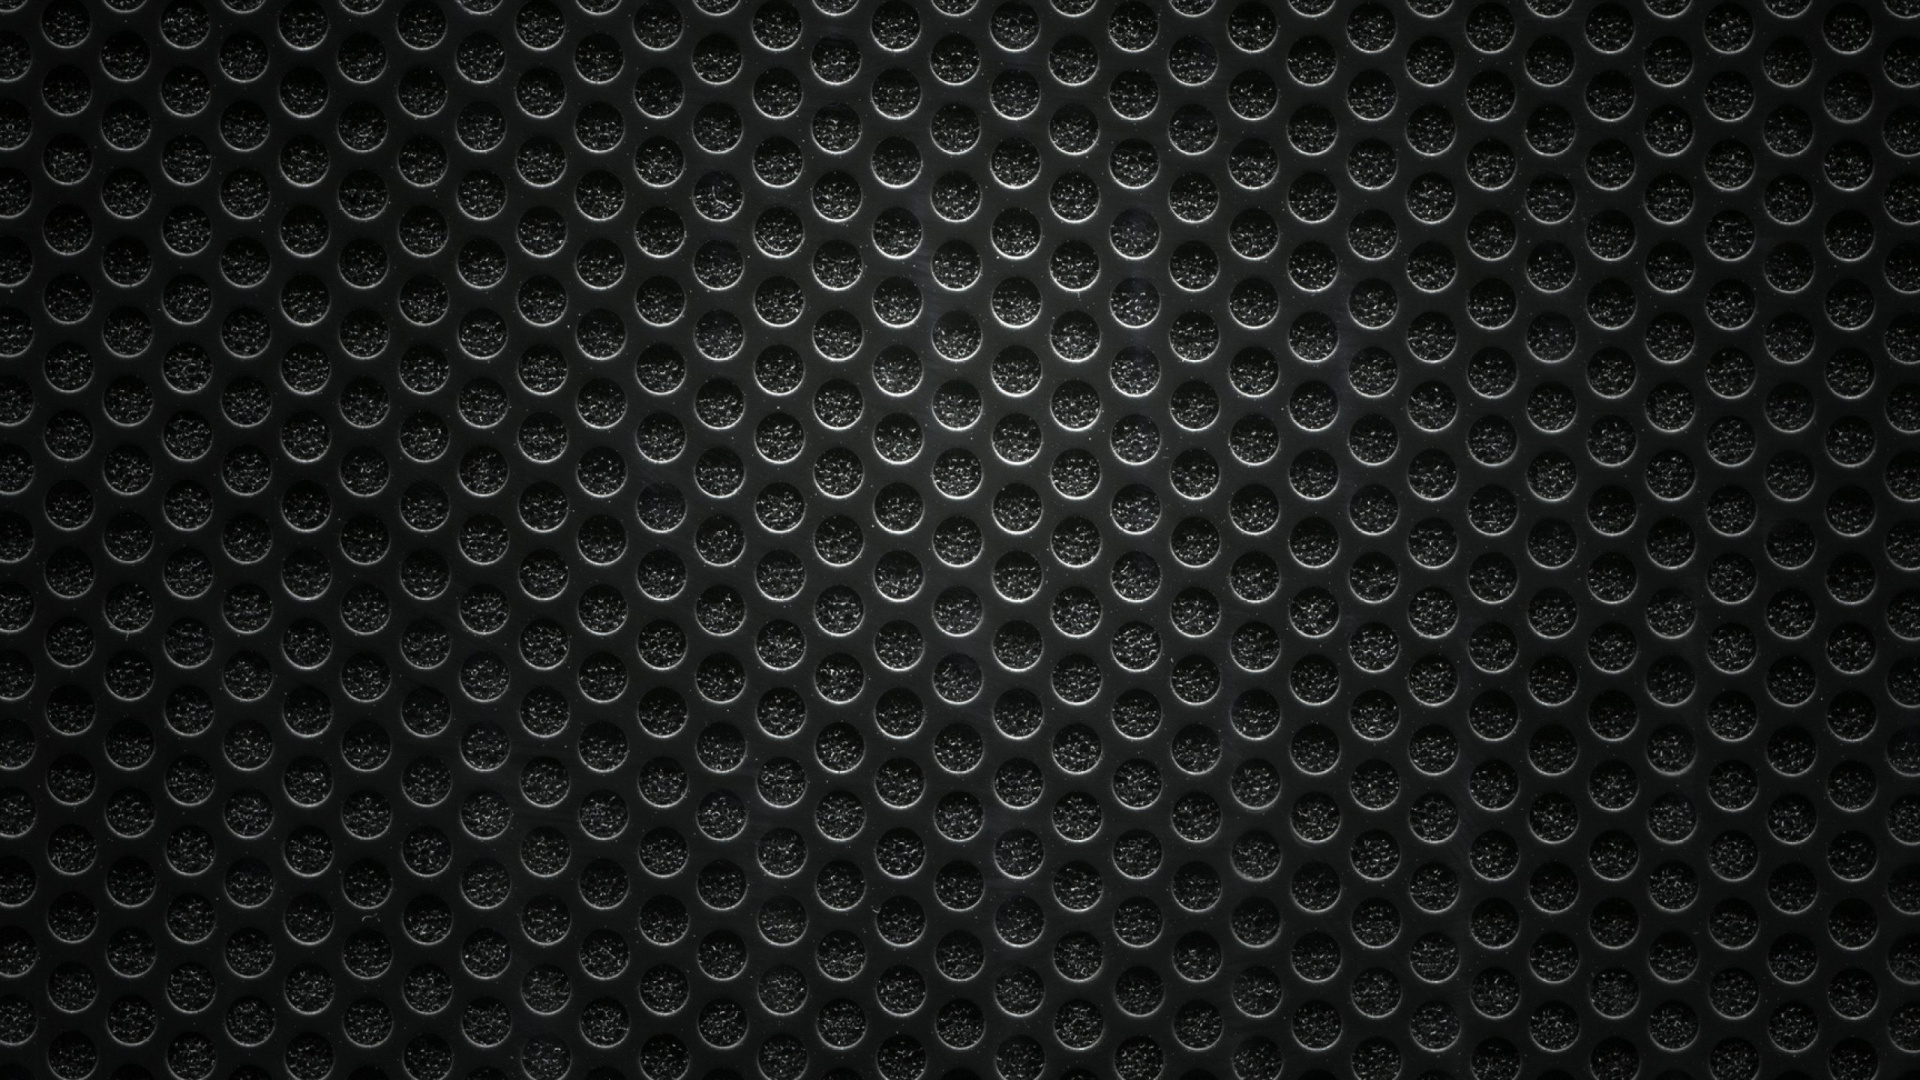 Schwarz-weiß Gepunktetes Textil. Wallpaper in 1920x1080 Resolution